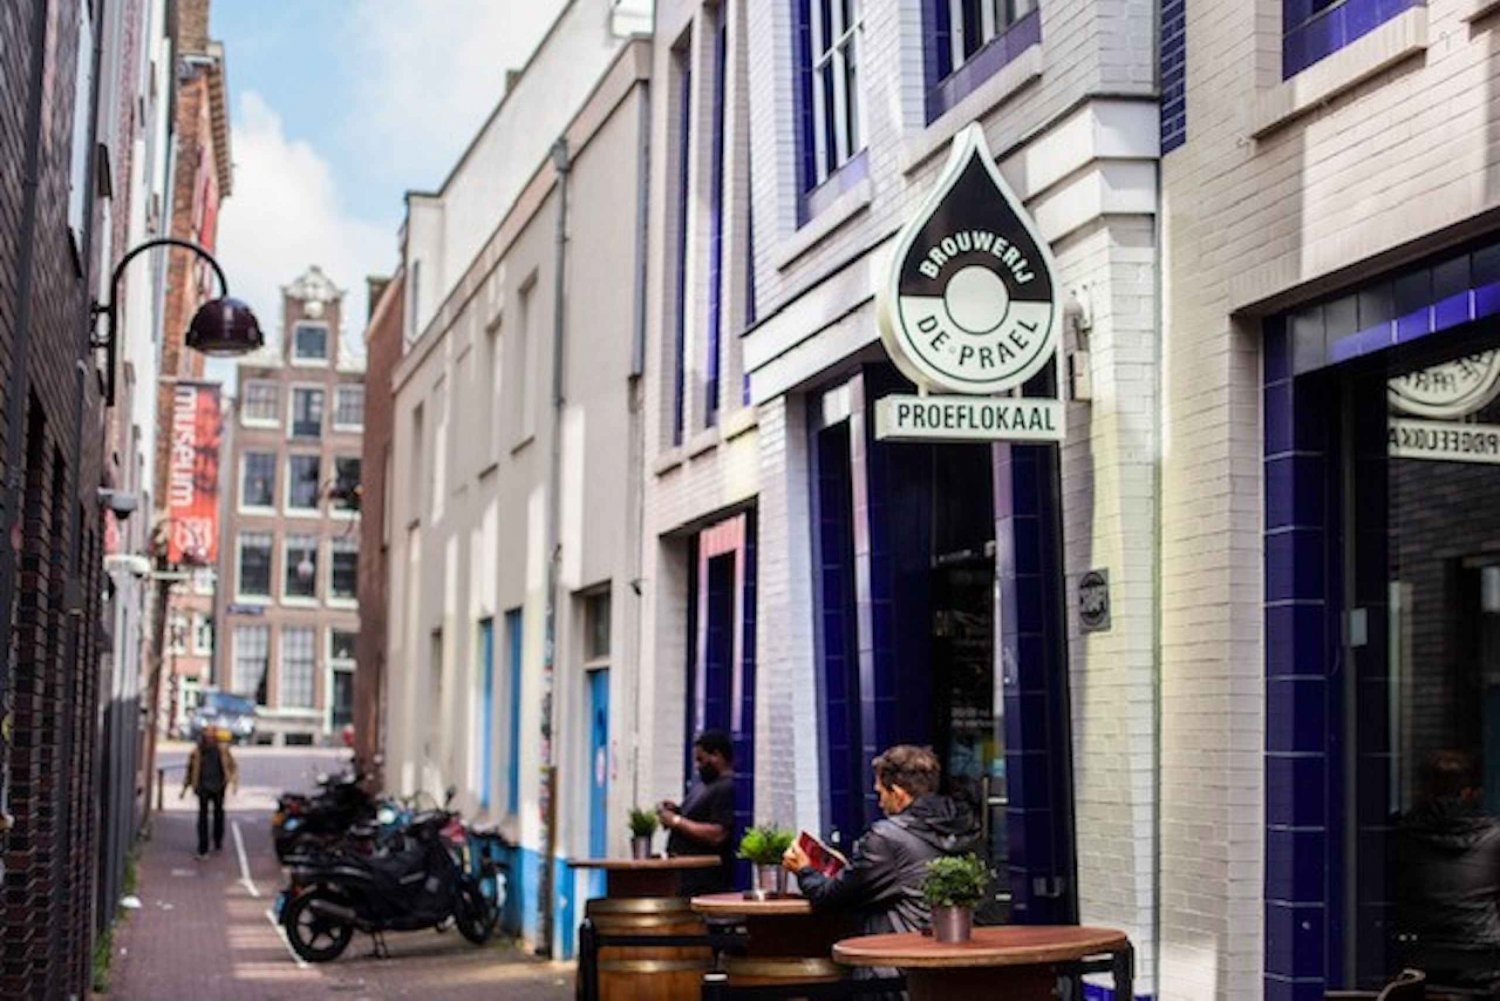 Amsterdam: Brouwerij de Prael Brewery Tour and Tasting